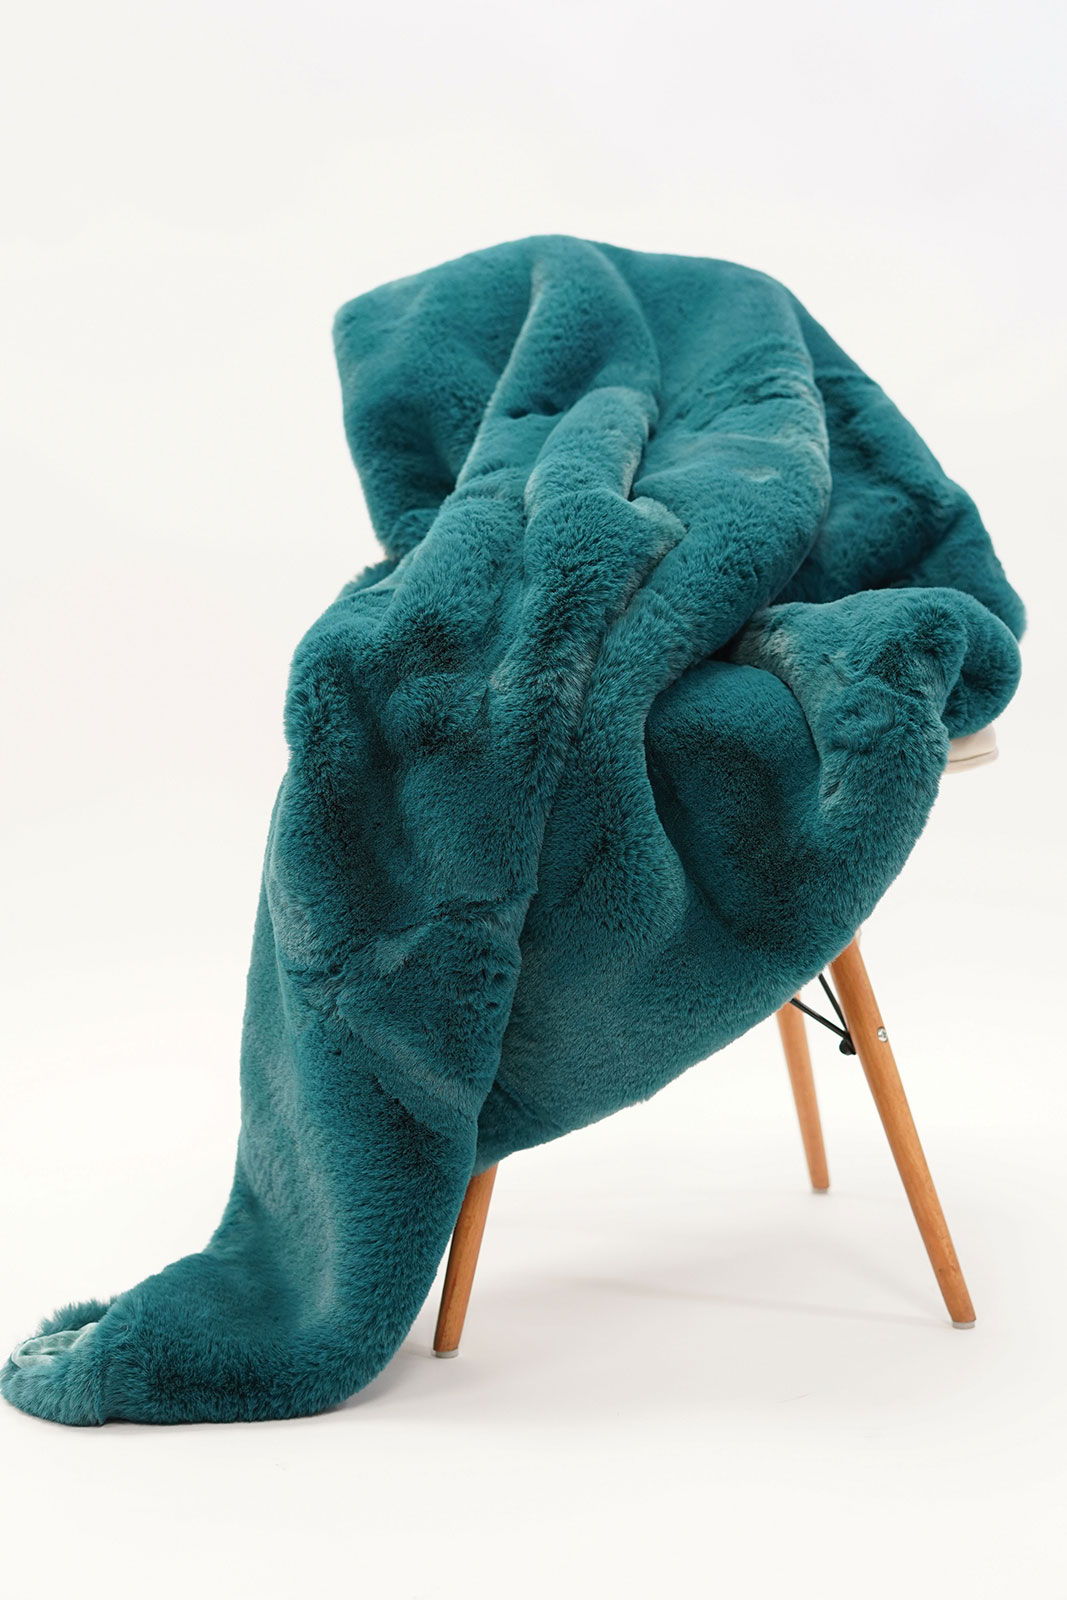 Caparica - Throw Blanket - Teal